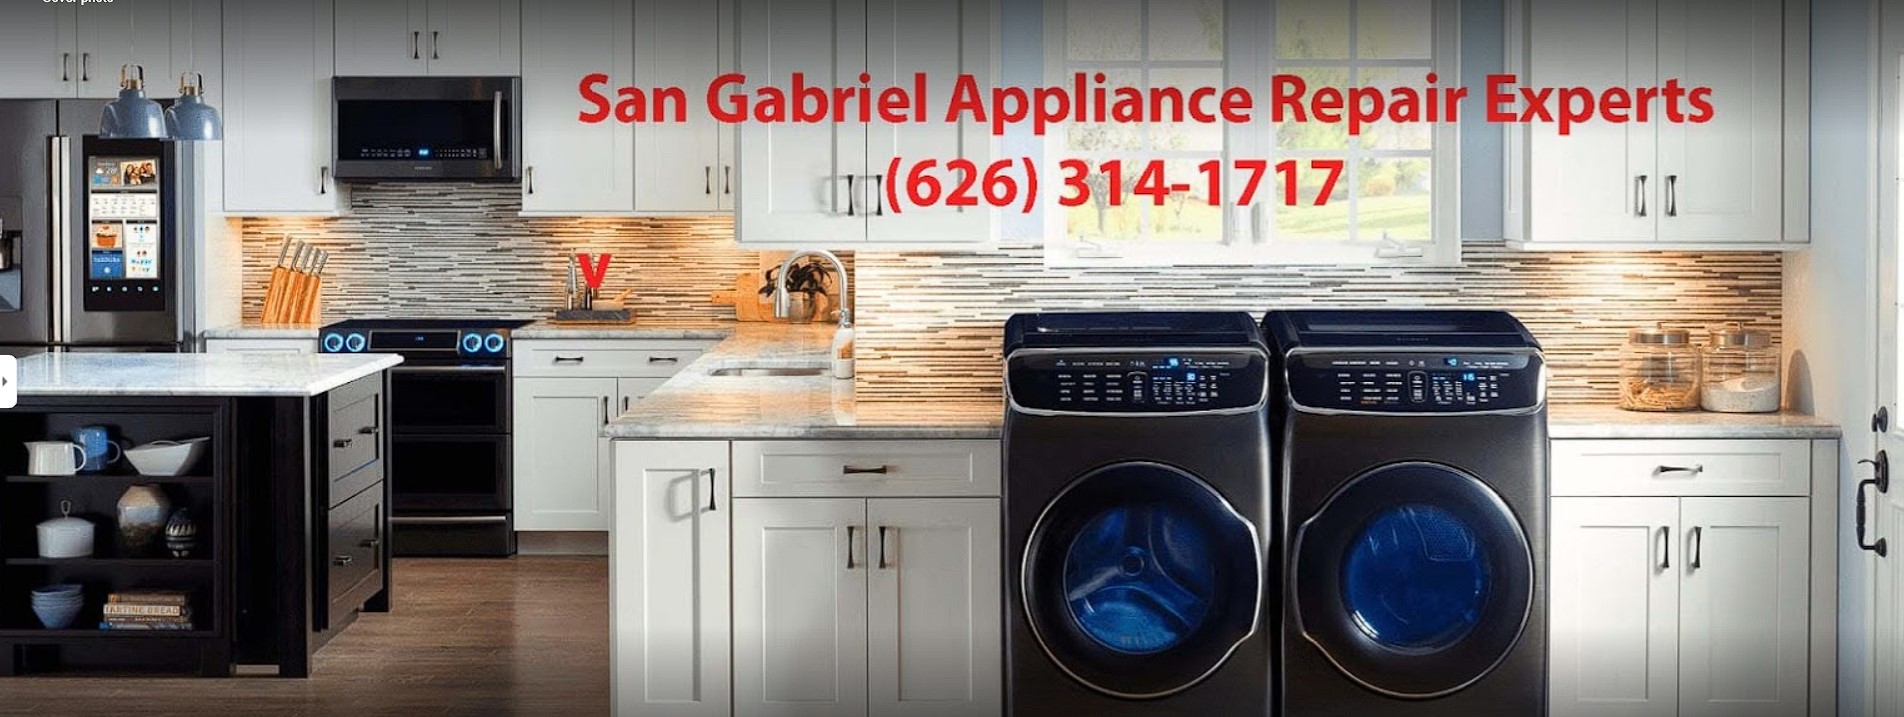 San Gabriel Appliance Repair Experts's Logo